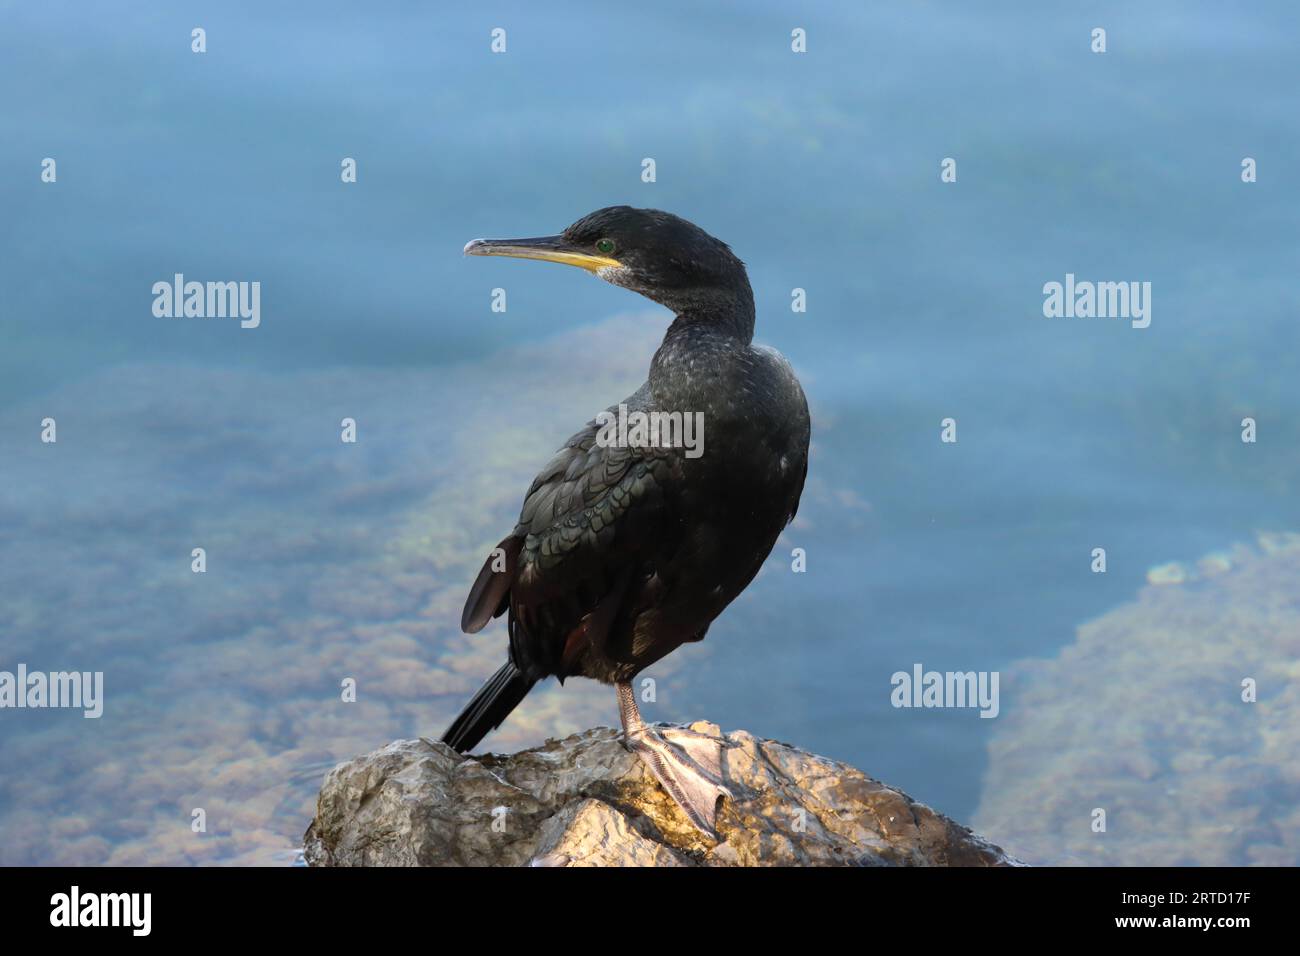 Vue d'un cormoran perché sur un rocher au bord de la mer, espace copie Banque D'Images